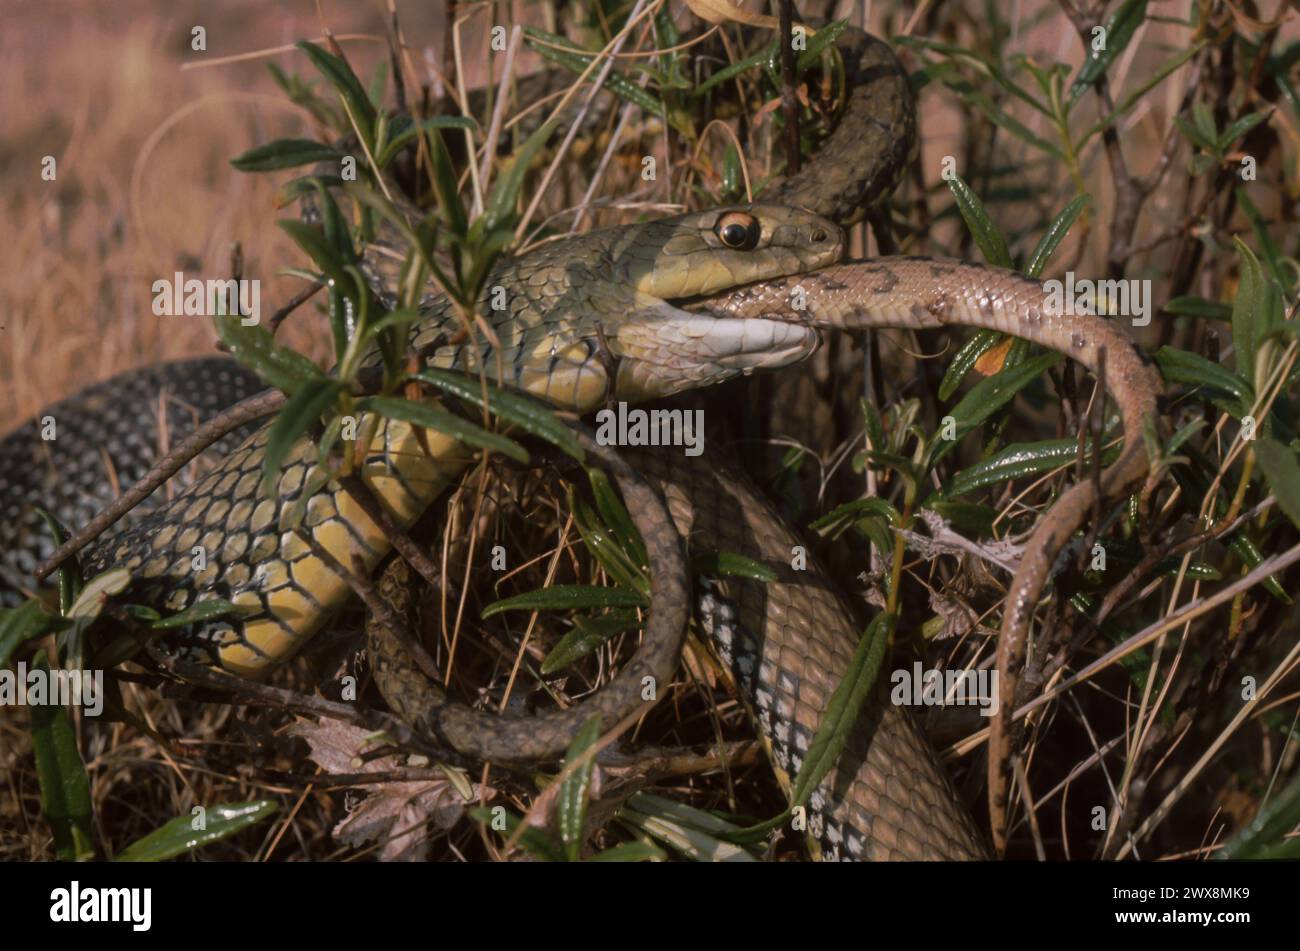 Montpellier Snake (Malpolon monspessulanus) eating another snake Stock Photo